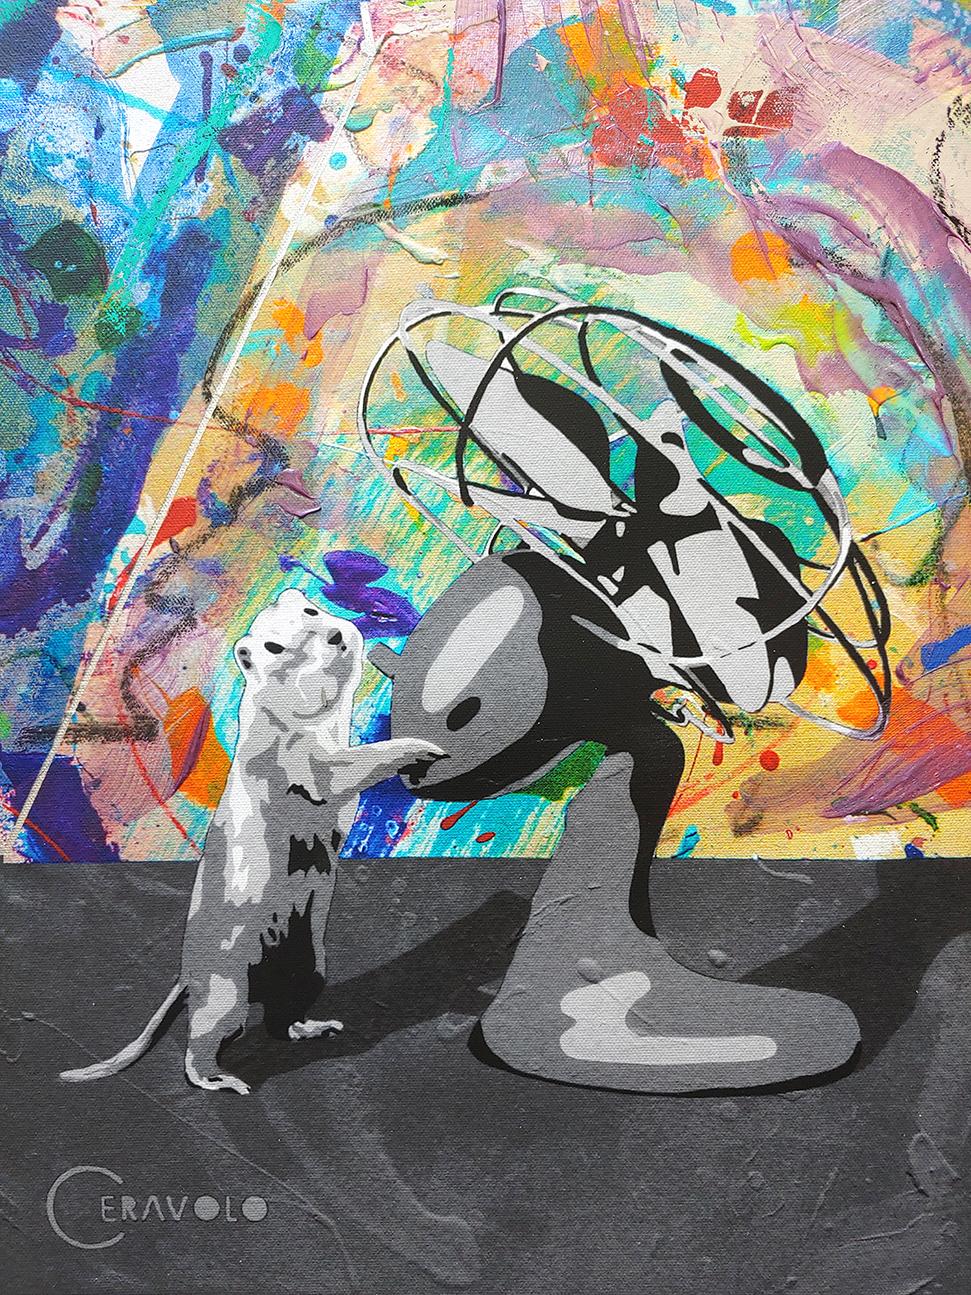 The Fan 2020, Mixed Media painting, Acrylic, oil stick, archival inks, spray  - Pop Art Mixed Media Art by Ceravolo